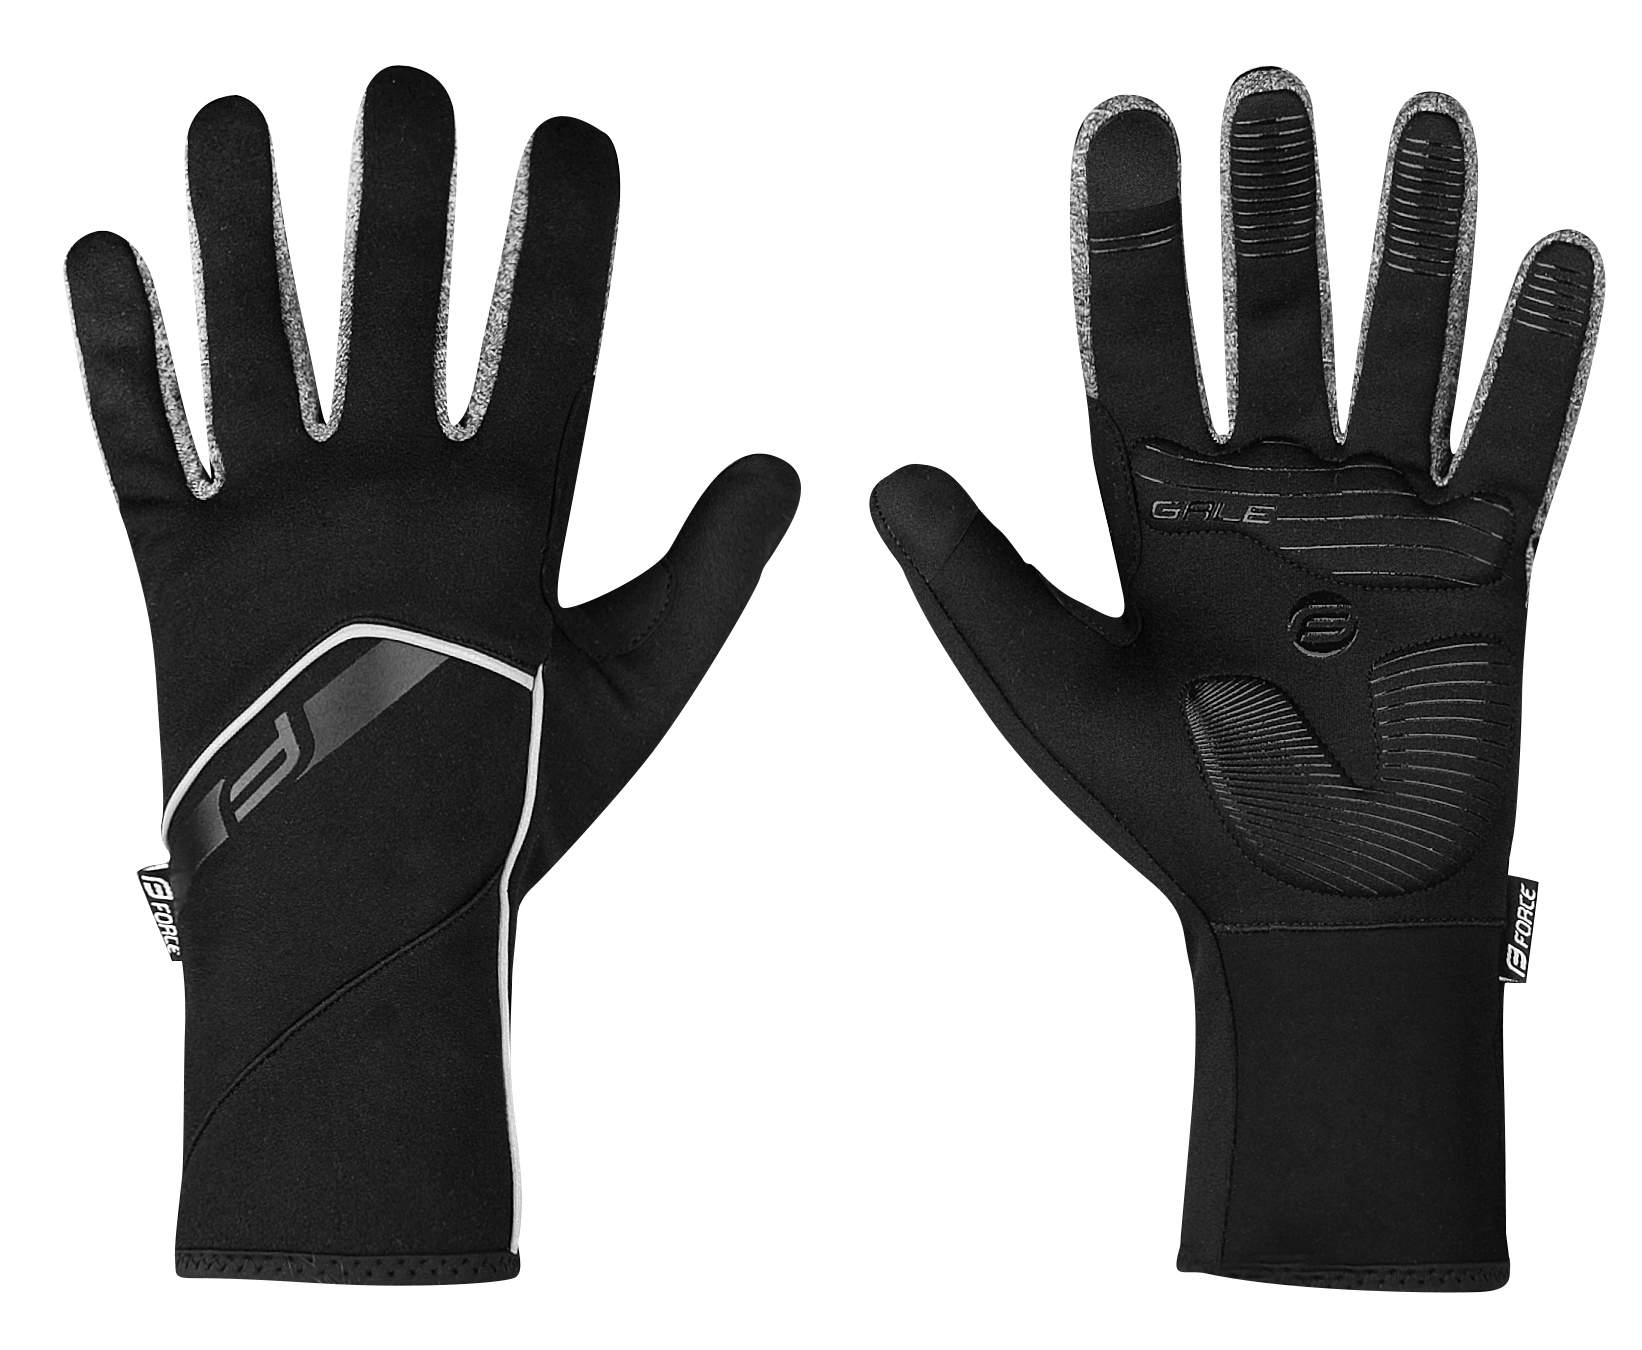 FORCE rukavice F GALE softshell, jaro-podzim, černé Velikost: M